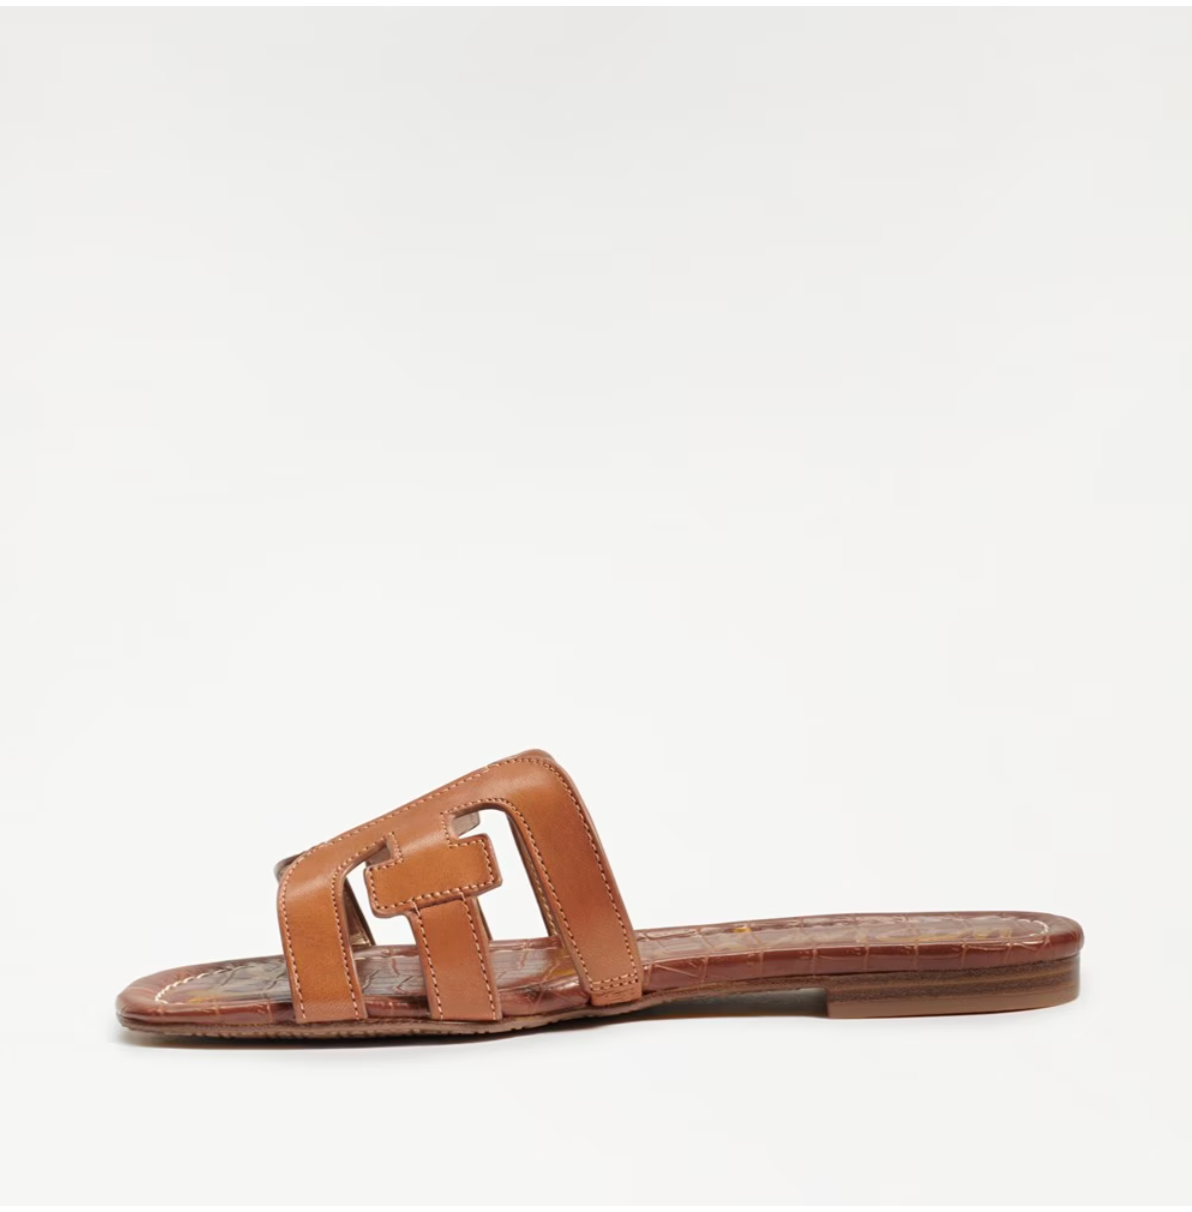 Sam Edelman Bay Slide Sandal - Saddle Leather